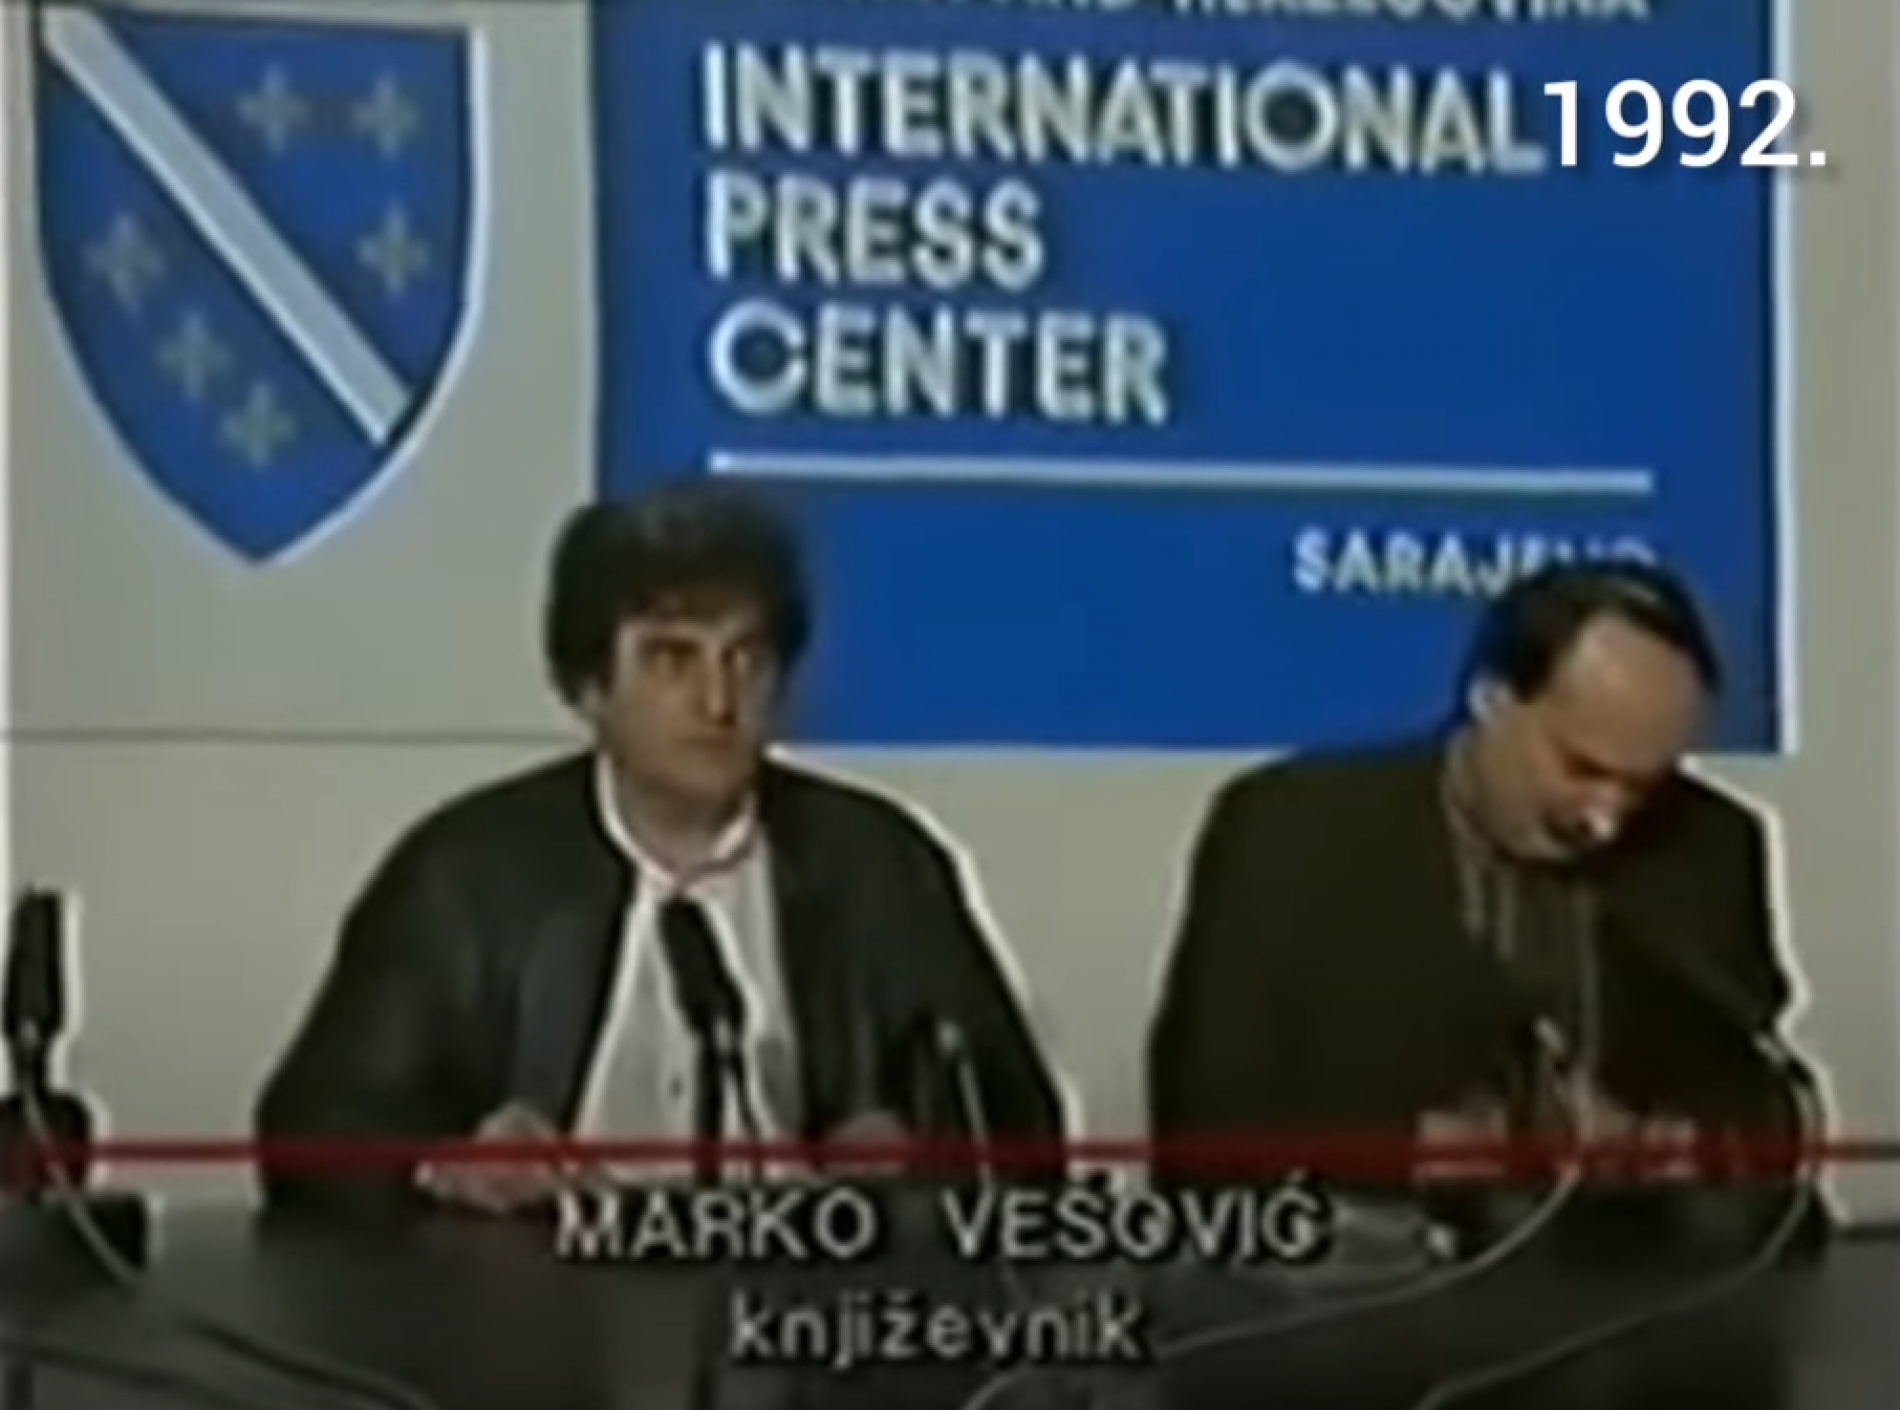 VIDEO Marko Vešović o sebi i onima koji su ga smatrali “izdajnikom” 